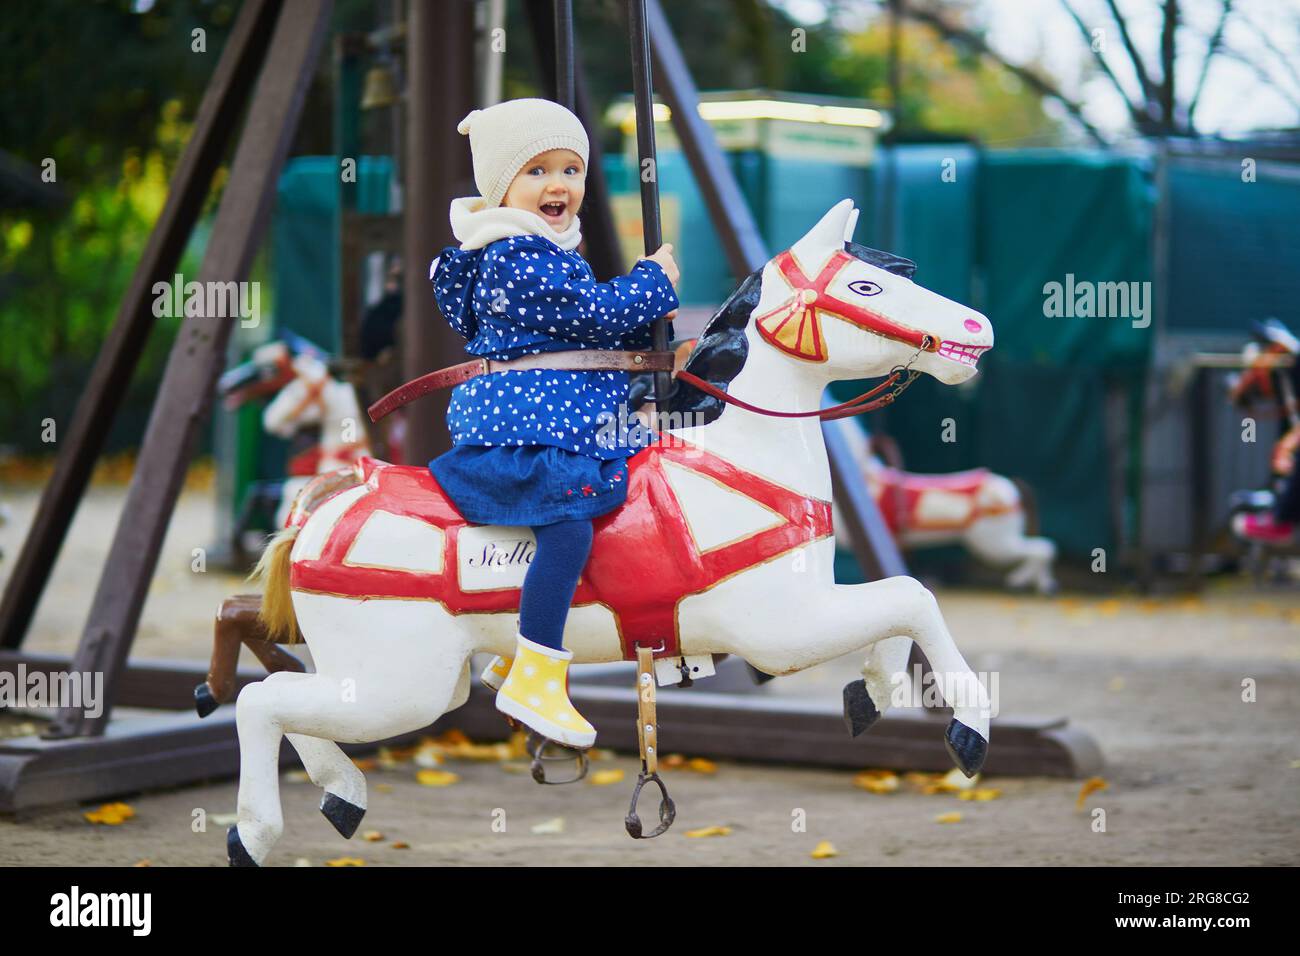 Ihr Kind hat Spaß auf einem alten französischen Karussell in Paris. Ein bezauberndes kleines Mädchen auf dem Spielplatz. Aktivitäten im Freien für kleine Kinder Stockfoto